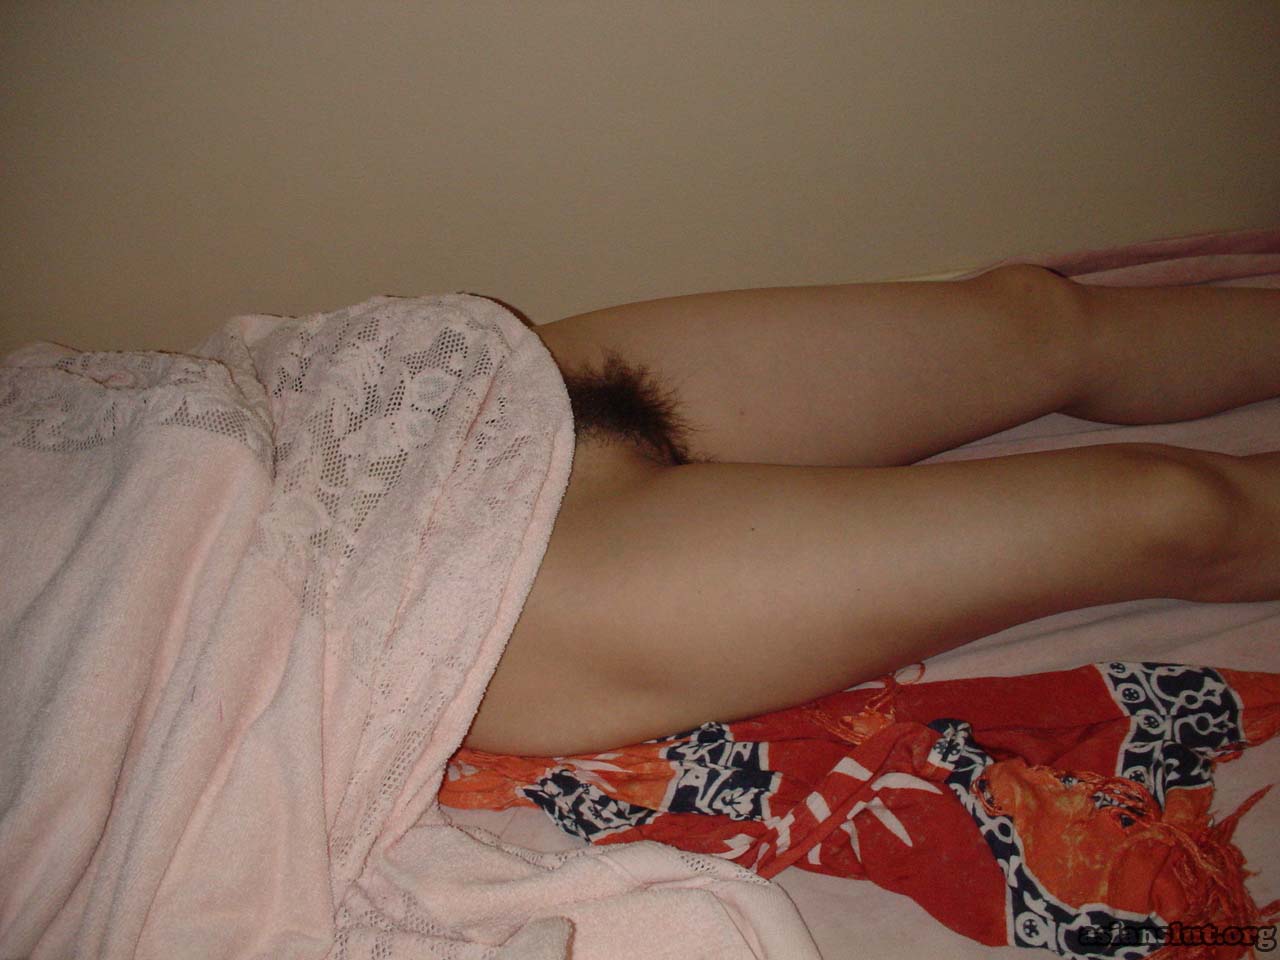 Naked Japanese Sleeping - Lovely Japanese wife's sleeping nude photos | ASIAN SLUT